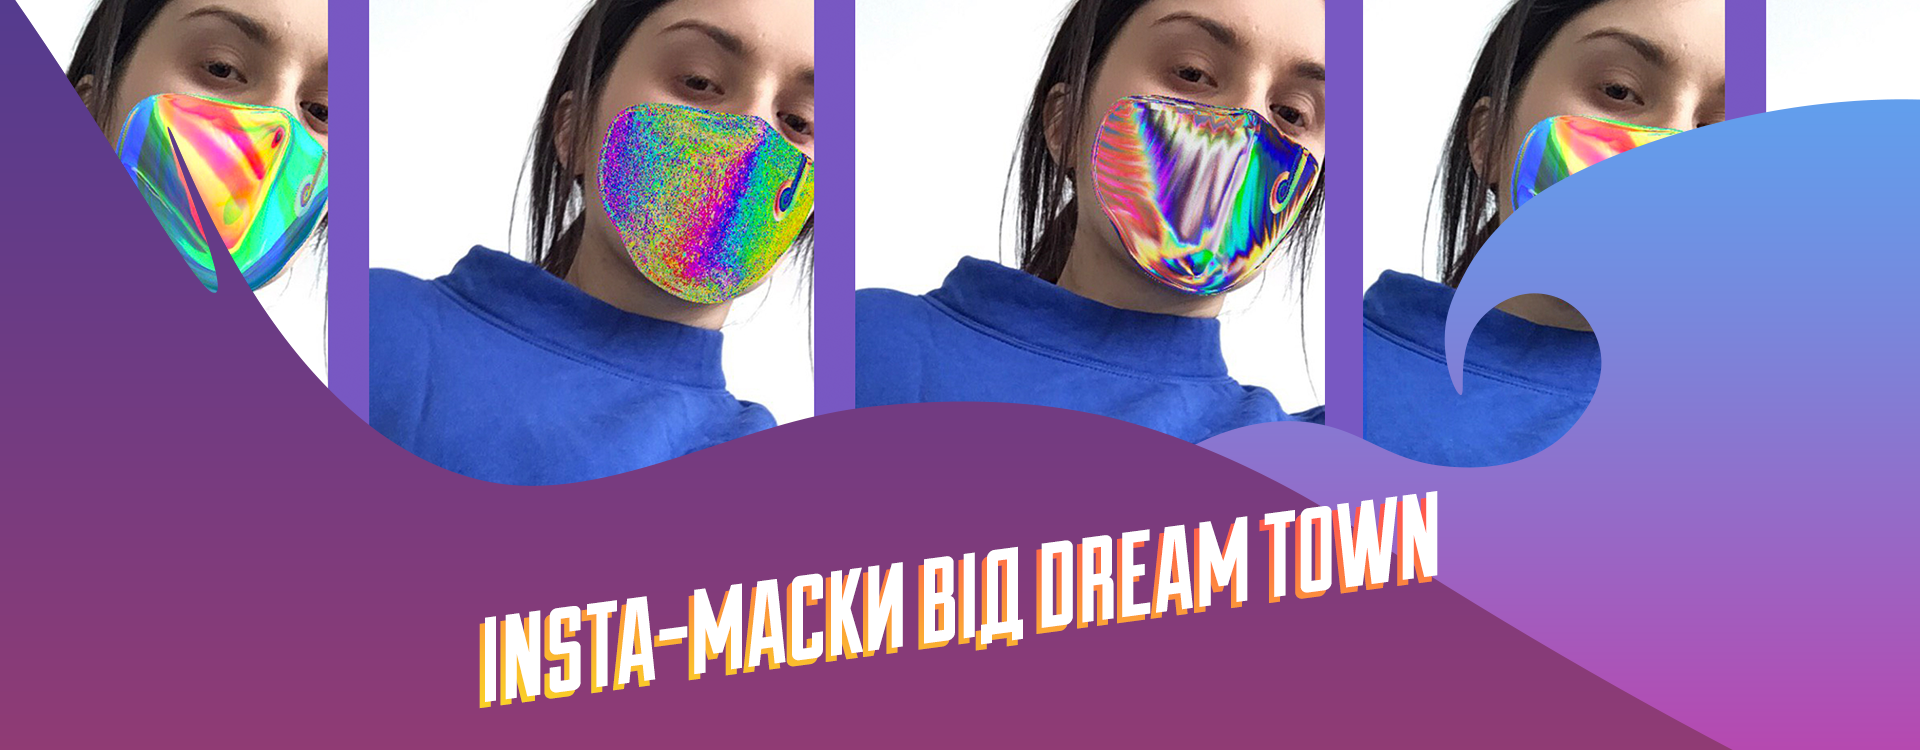 Dream Town создал коллекцию радужных масок